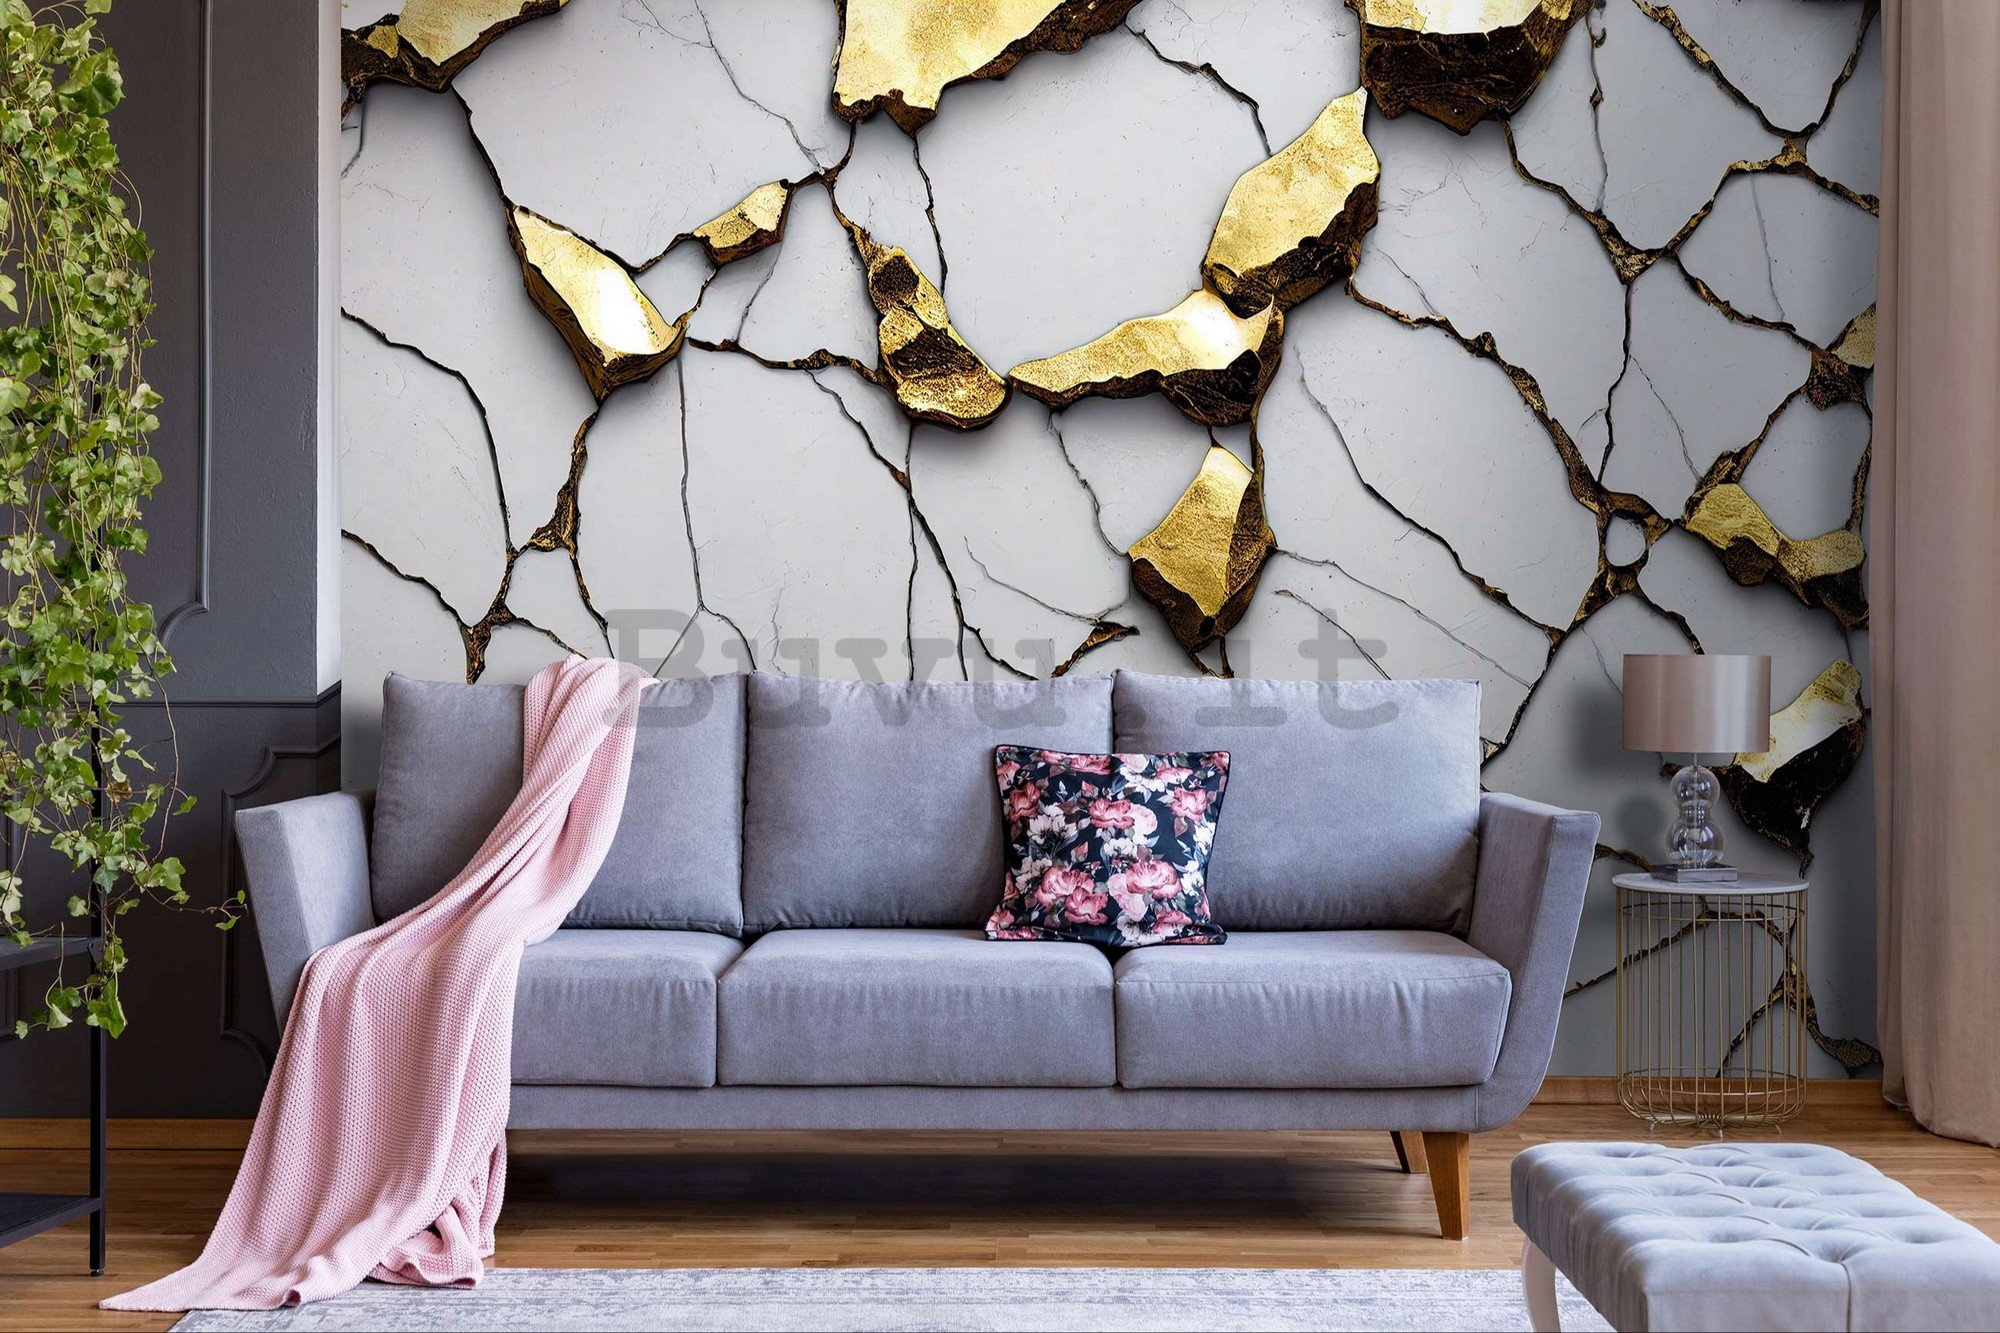 Fotomurale in TNT: Imitazione glamour del marmo dorato con parete bianca - 416x254 cm